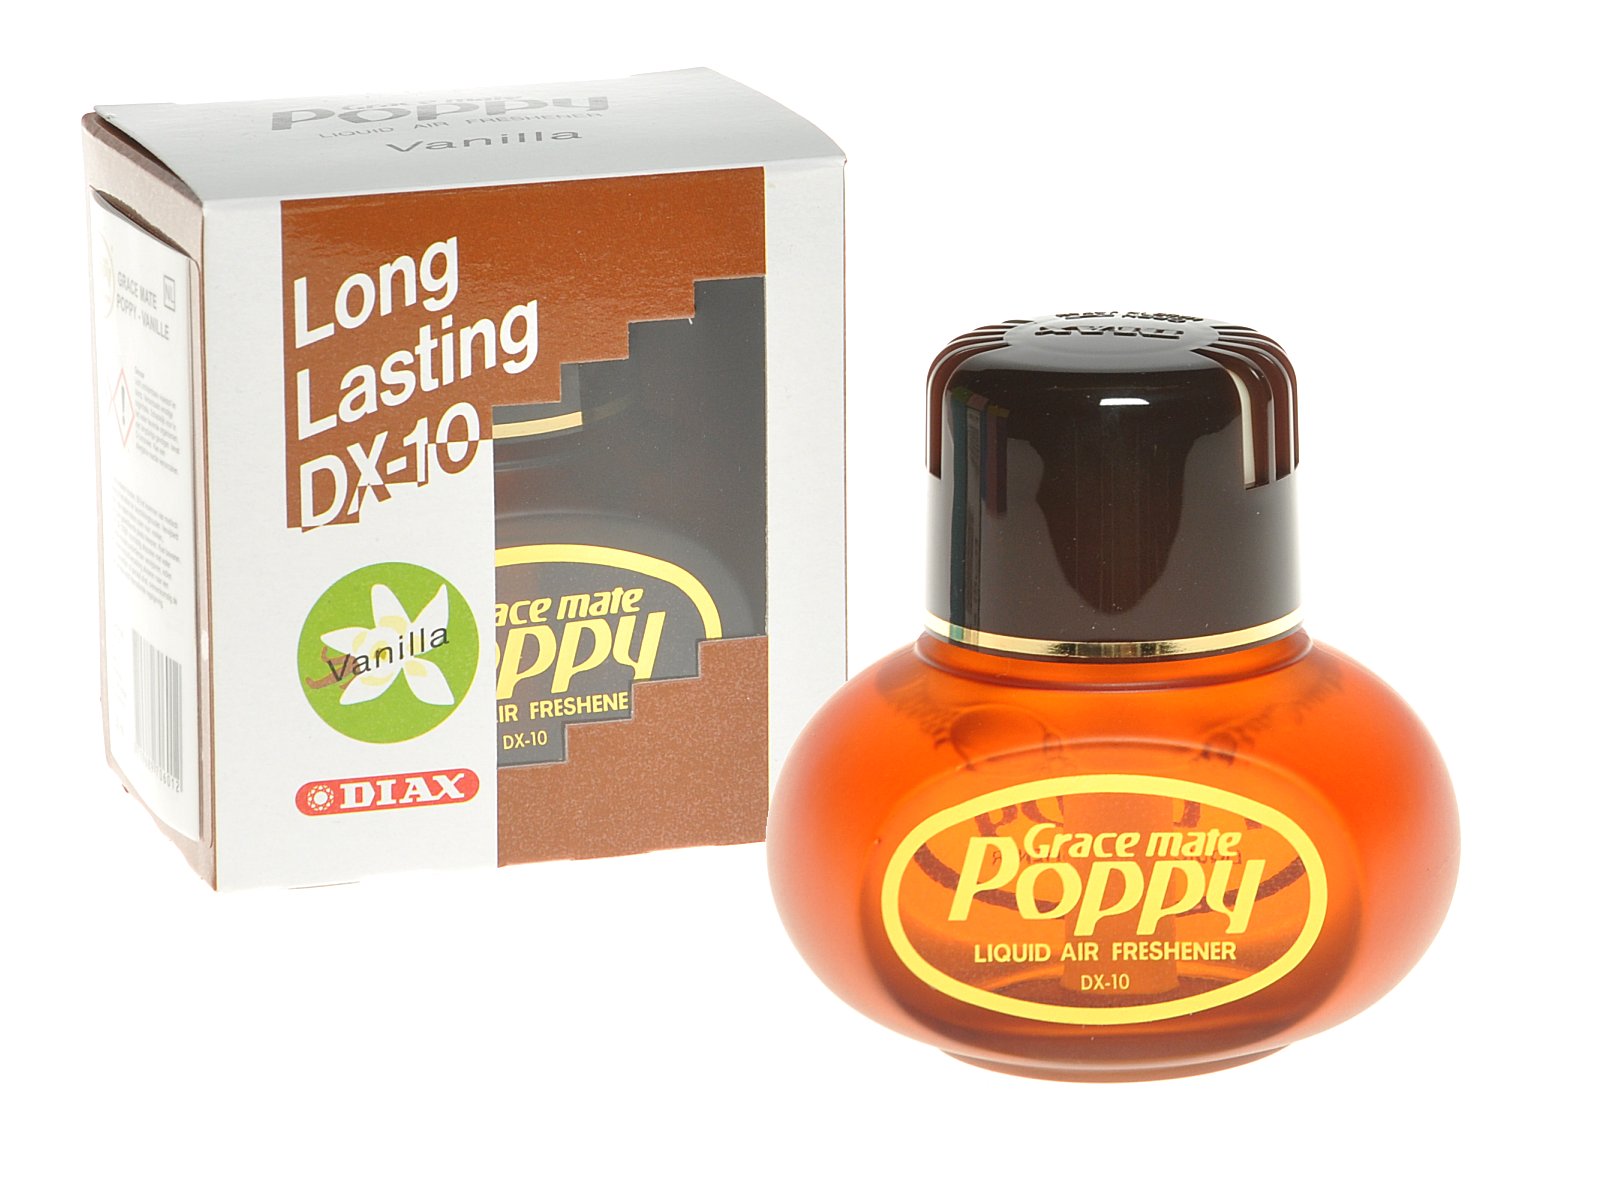 Poppy Original Lufterfrischer Trucker Top- Artikel in den USA und Europa  150ml, Duftnote: Vanilla, Lufterfrischer, Pflegemittel